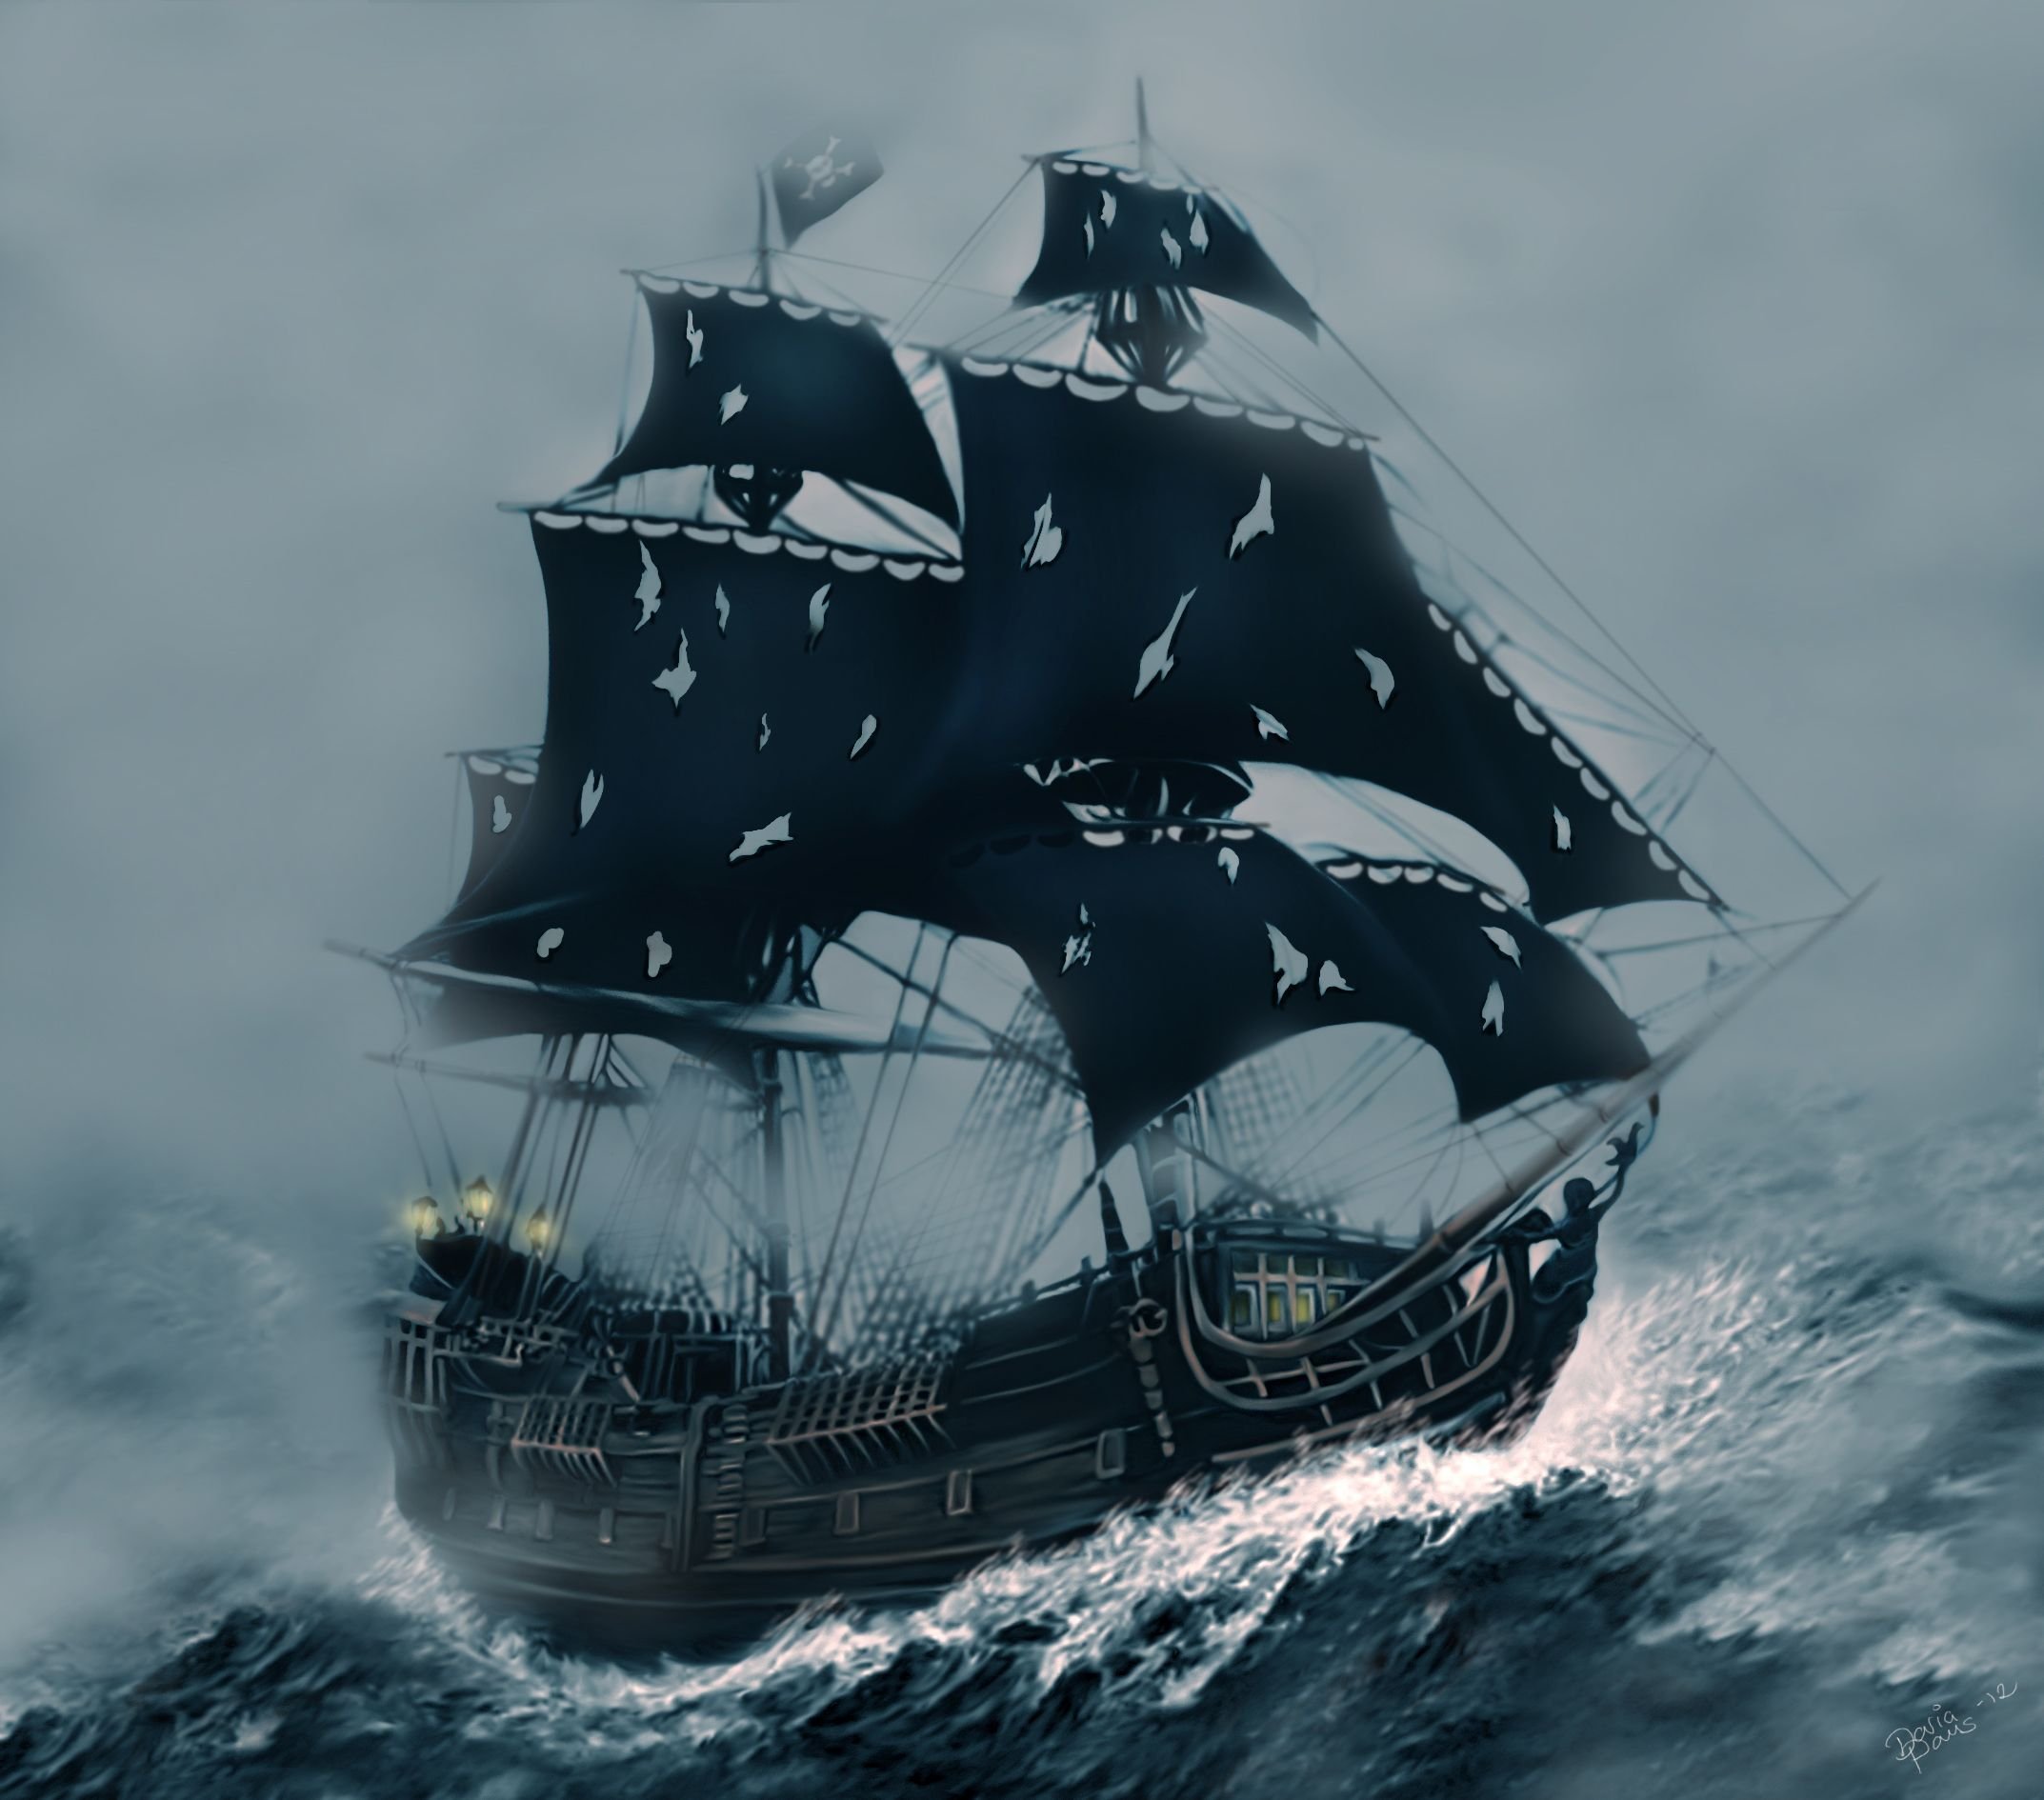 Чёрная Жемчужина корабль из пиратов Карибского моря